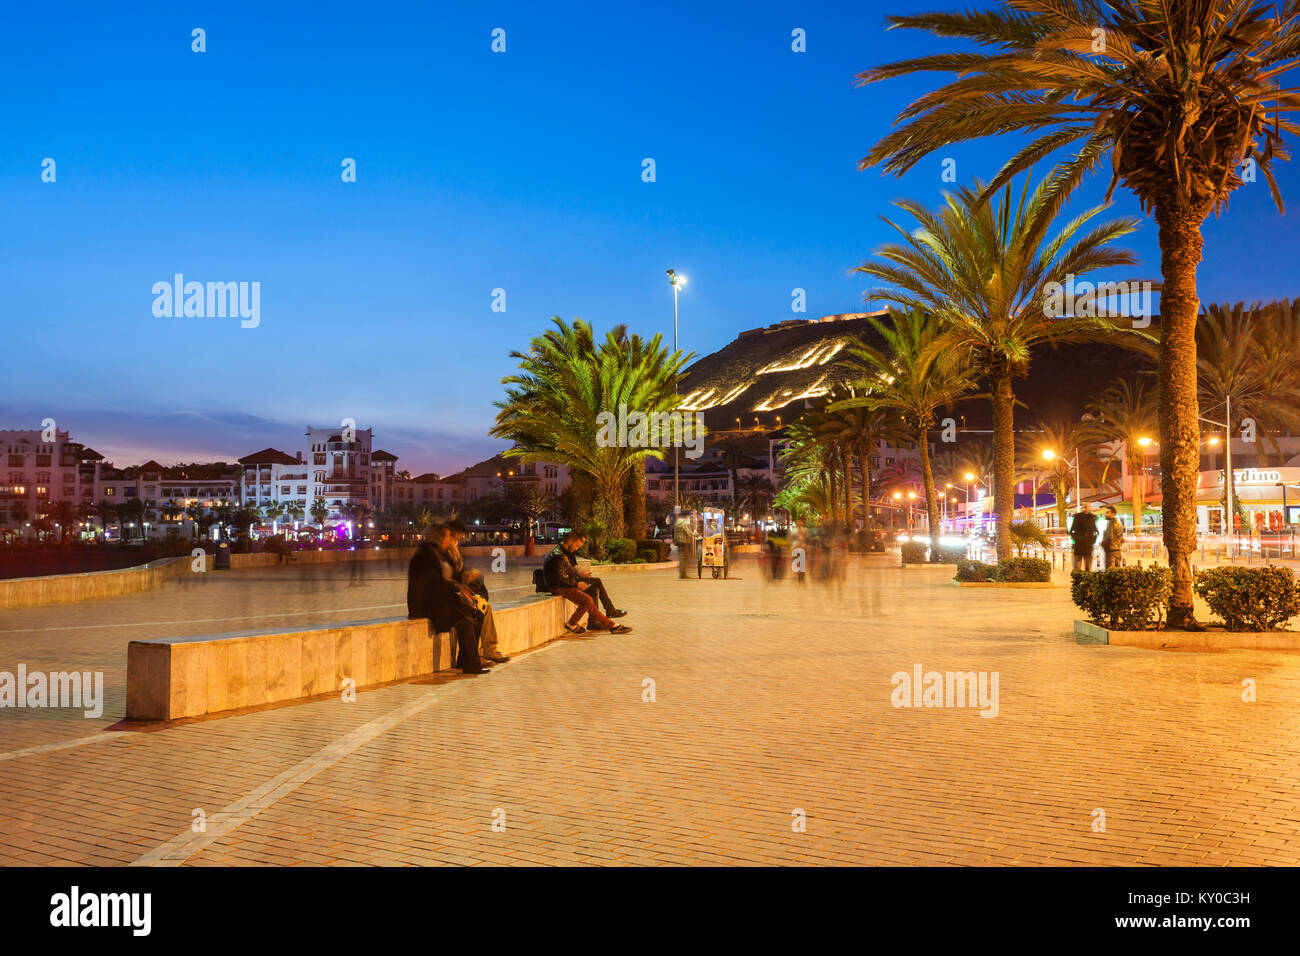 AGADIR, MAROC - Le 20 février 2016, Agadir : promenade au bord de la nuit, le Maroc. Agadir est une ville du Maroc située sur le littoral de Atlant Banque D'Images